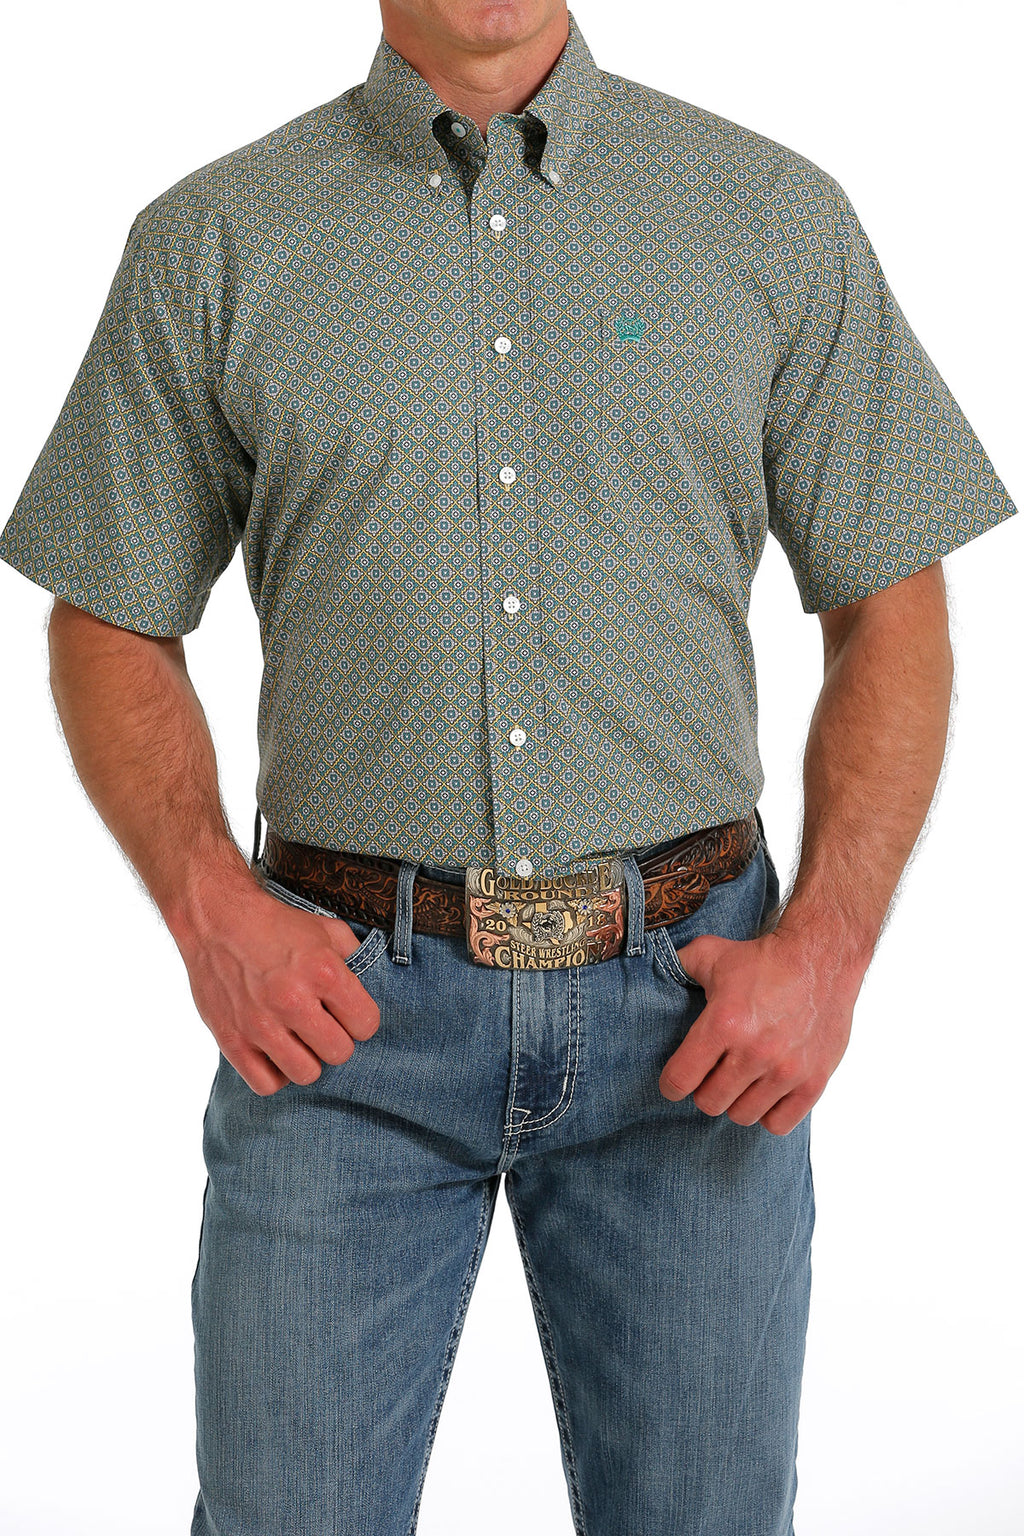 CINCH Men's Short Sleeve Button-Down Western Shirt